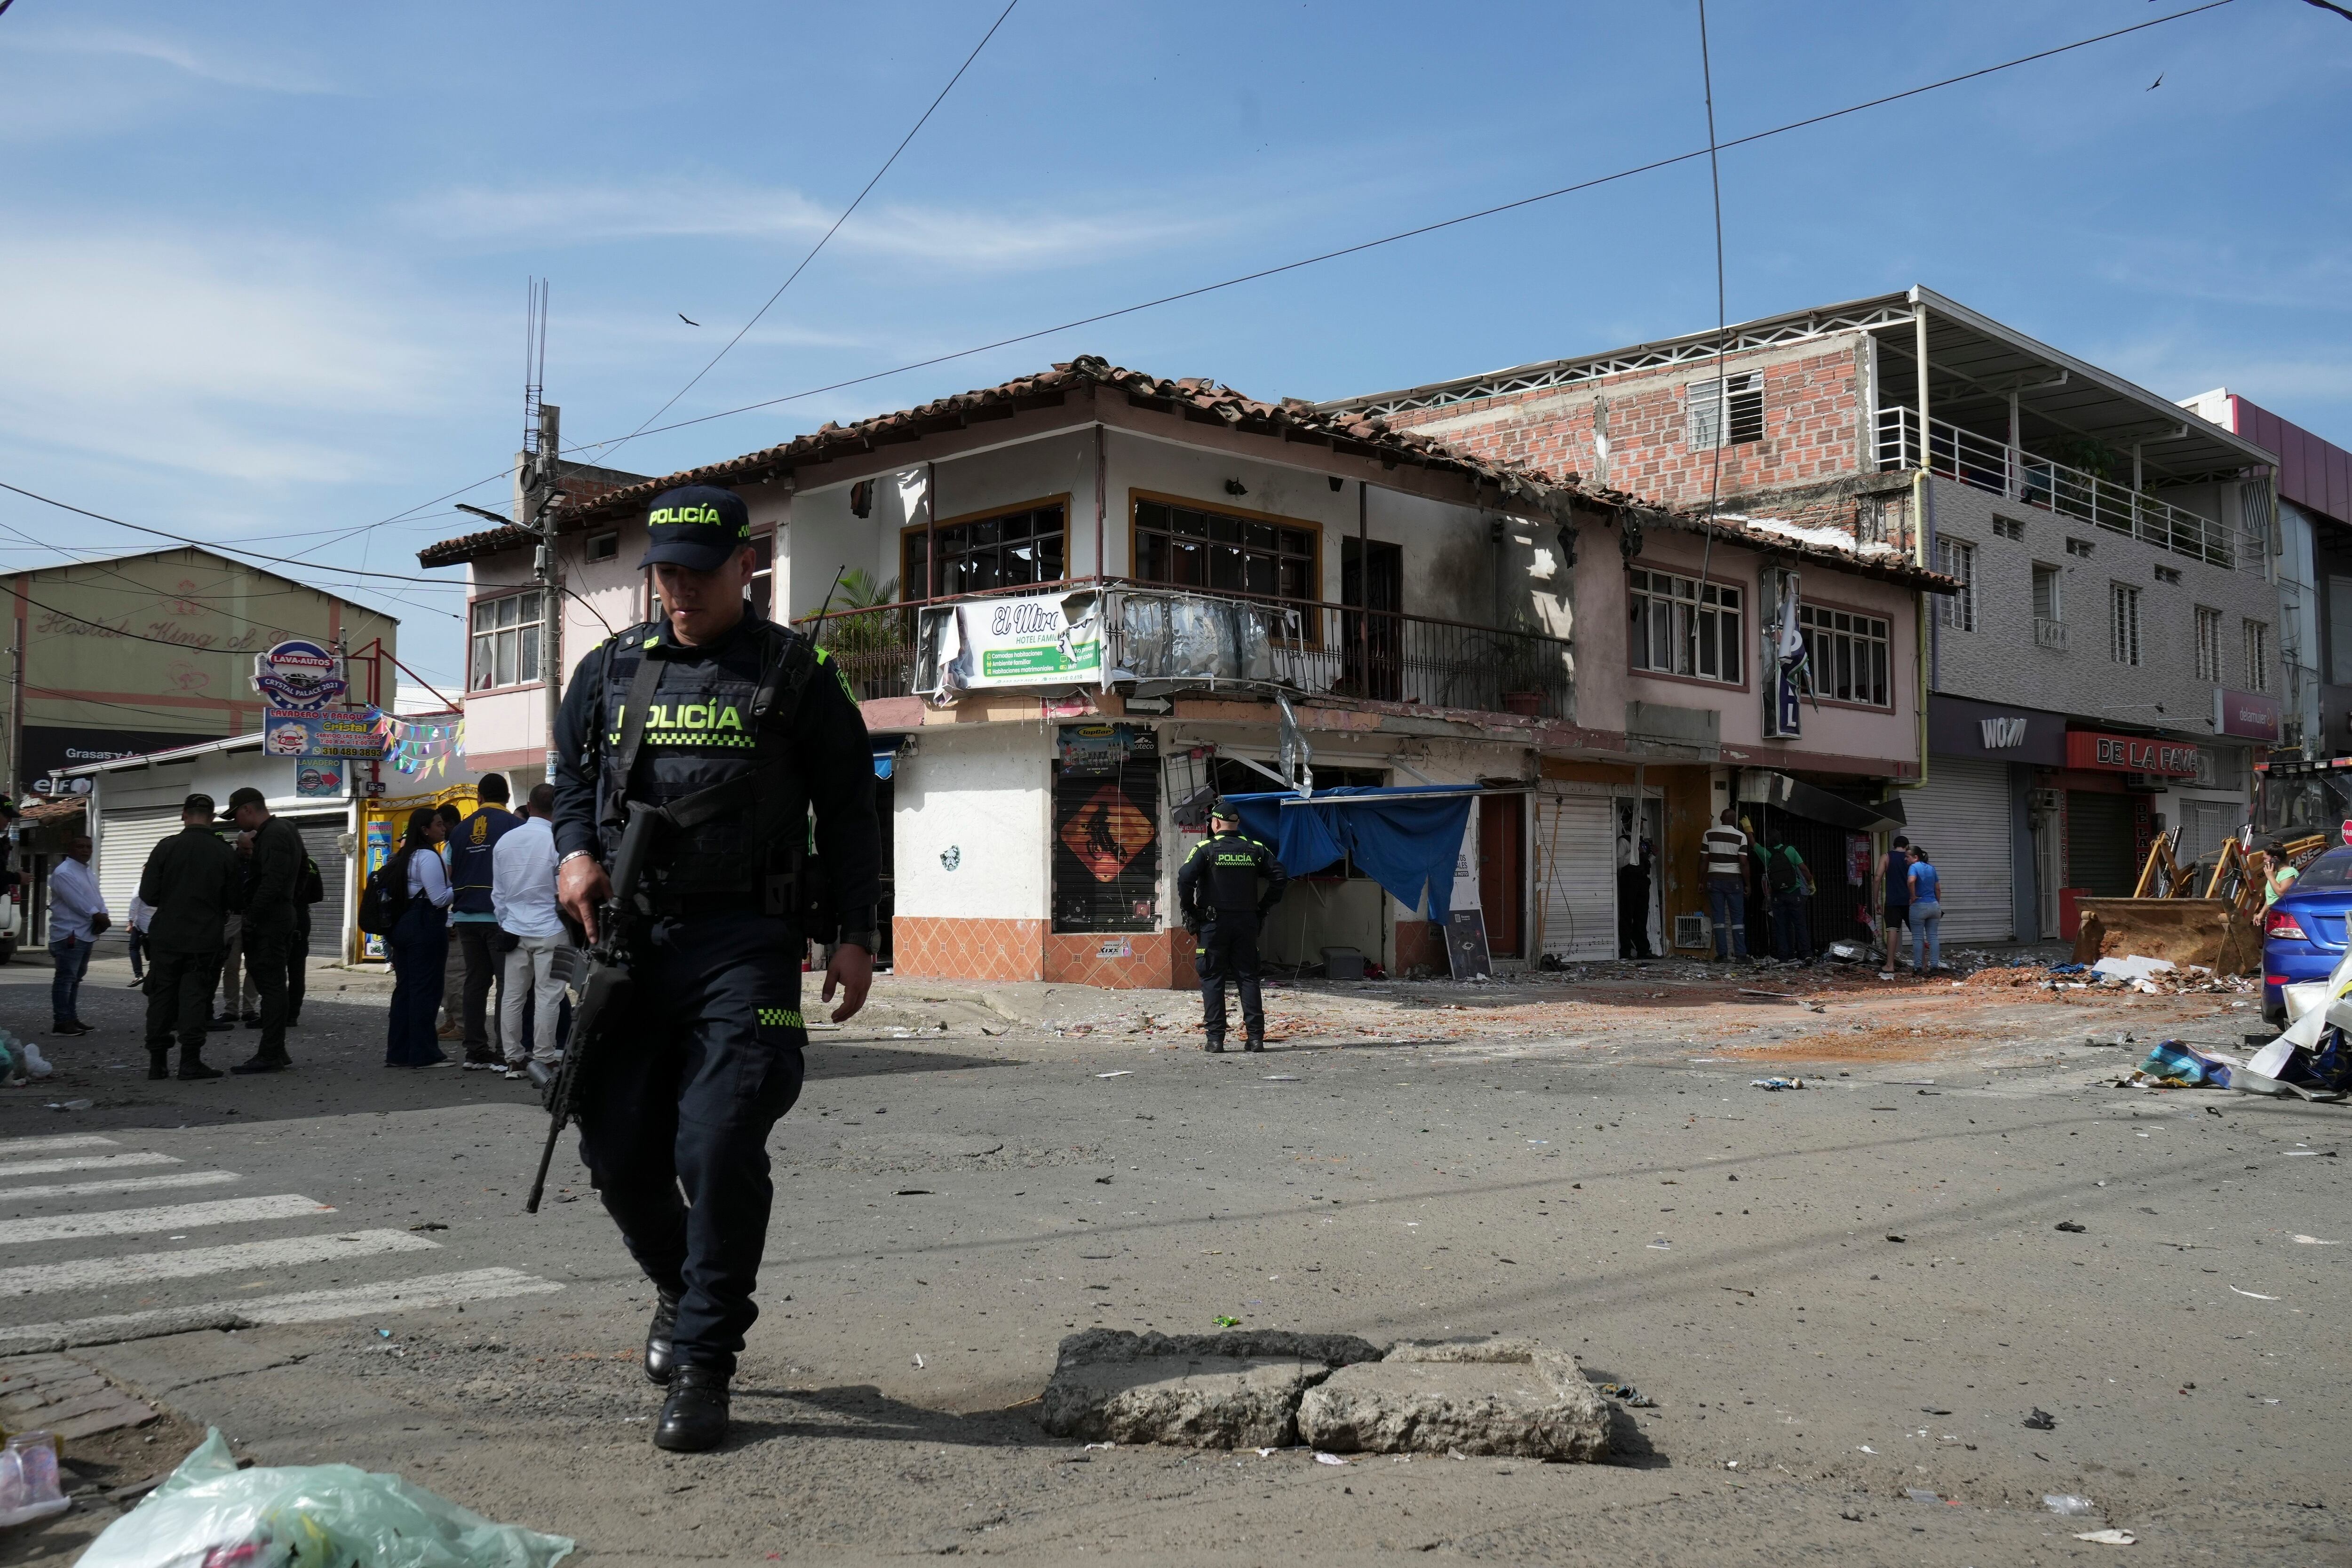 La policía patrulla la zona después de que una motocicleta bomba explotara en un hotel en el que se alojarían algunos policías en Jamundí, कोलंबिया, el lunes 20 de mayo de 2024. (AP Foto/Juan B Díaz)